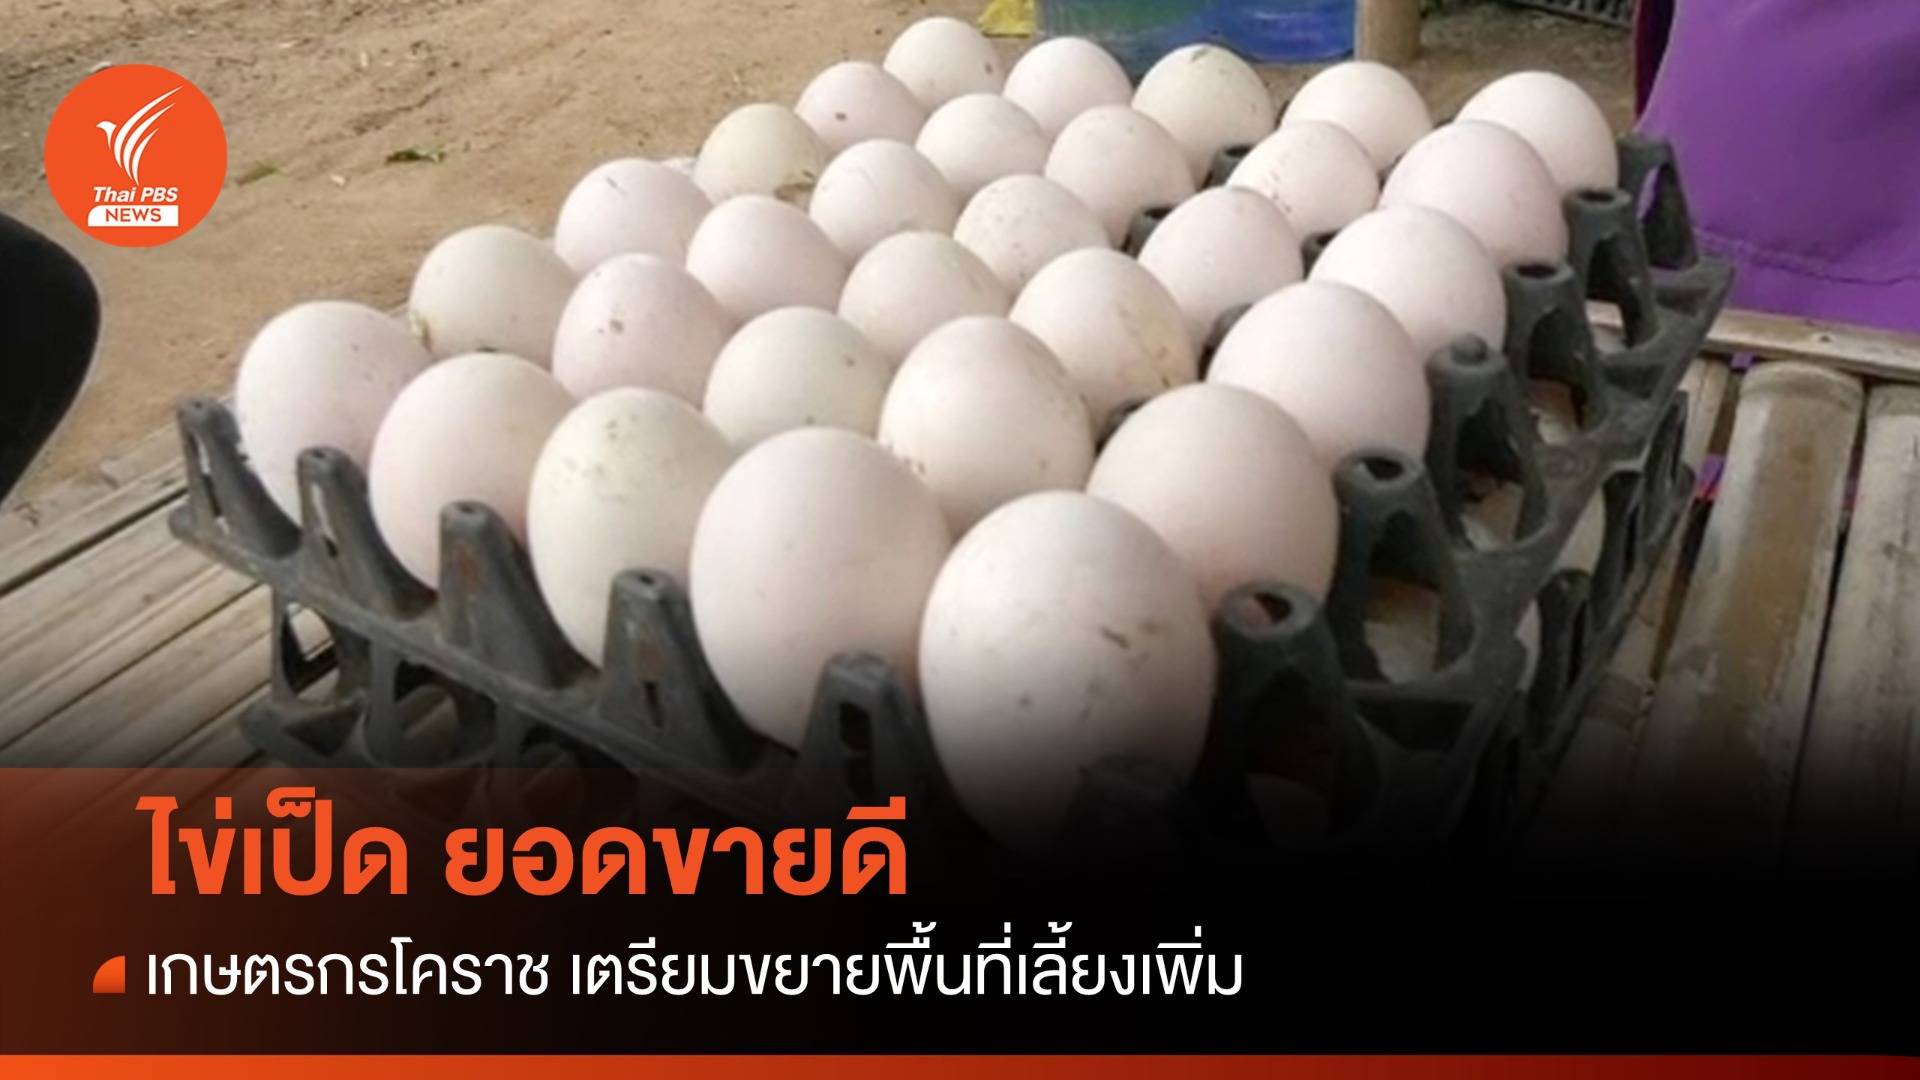 "ไข่ไก่" แพง คนหันซื้อ "ไข่เป็ด" ยอดขายดีจนเกษตรกรโคราชอยากเลี้ยงเพิ่ม